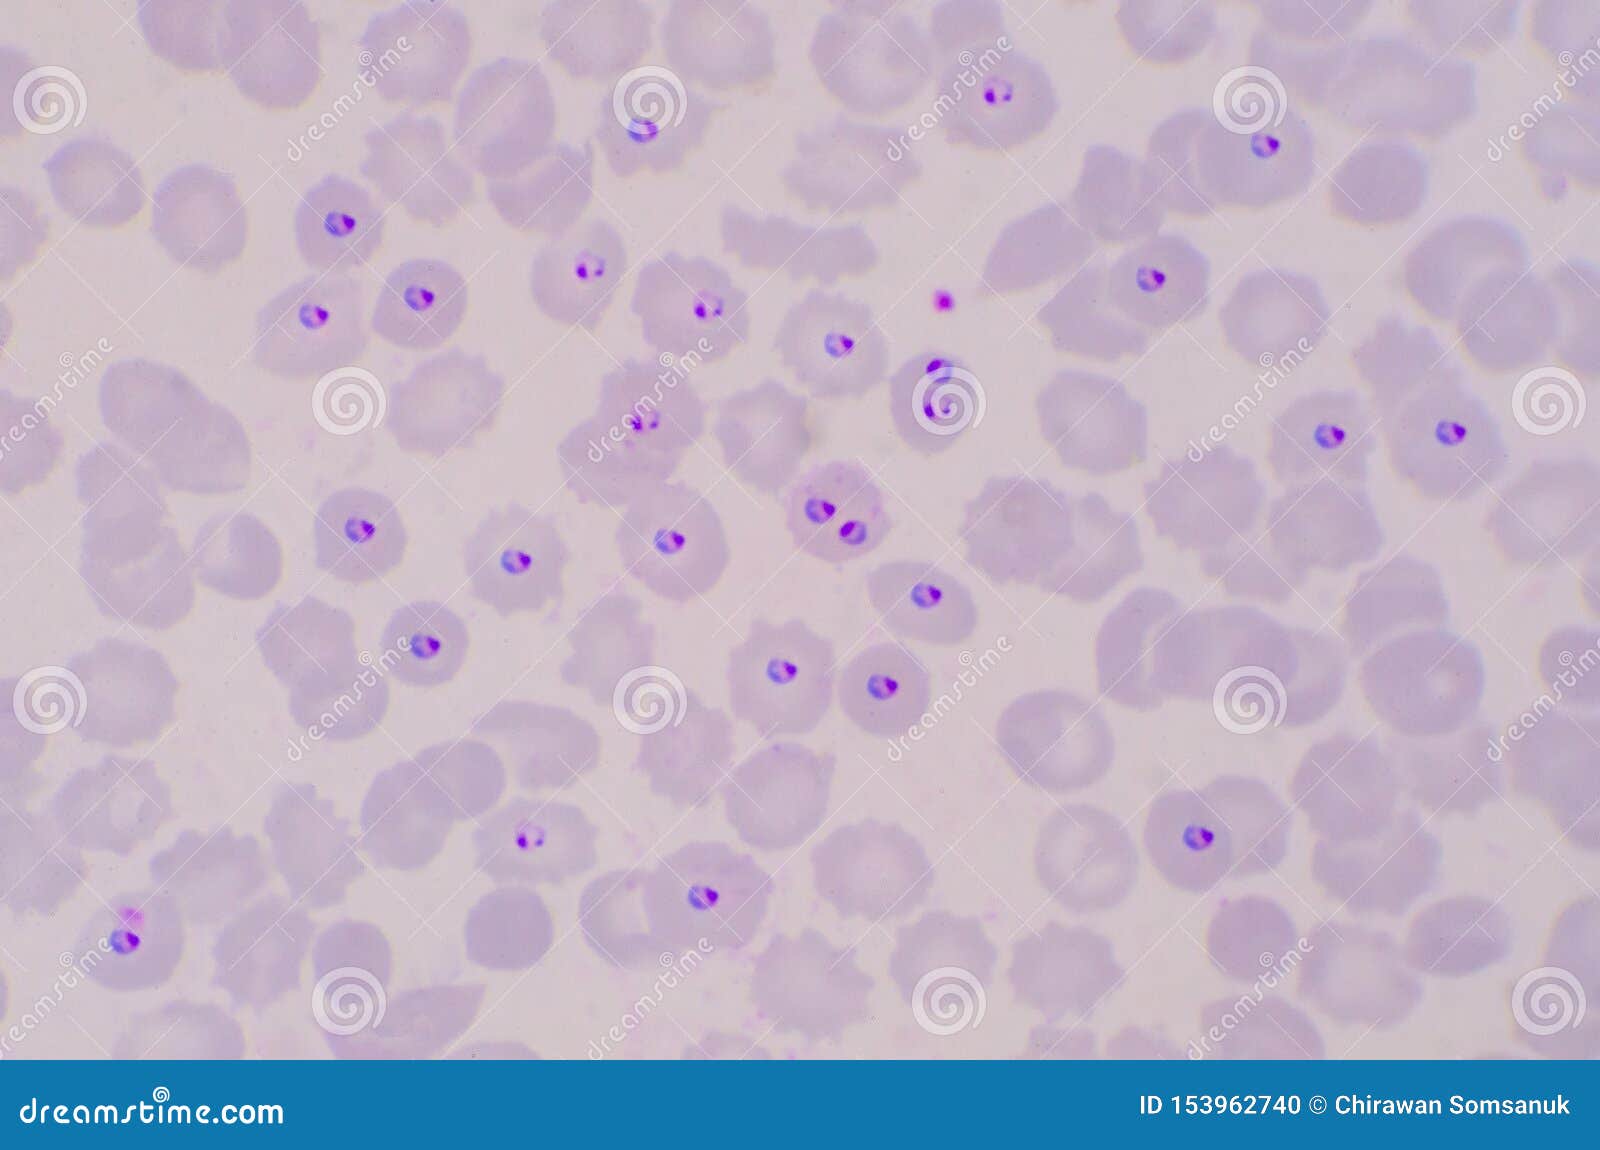 Blood and Tissue Protozoa | Basicmedical Key